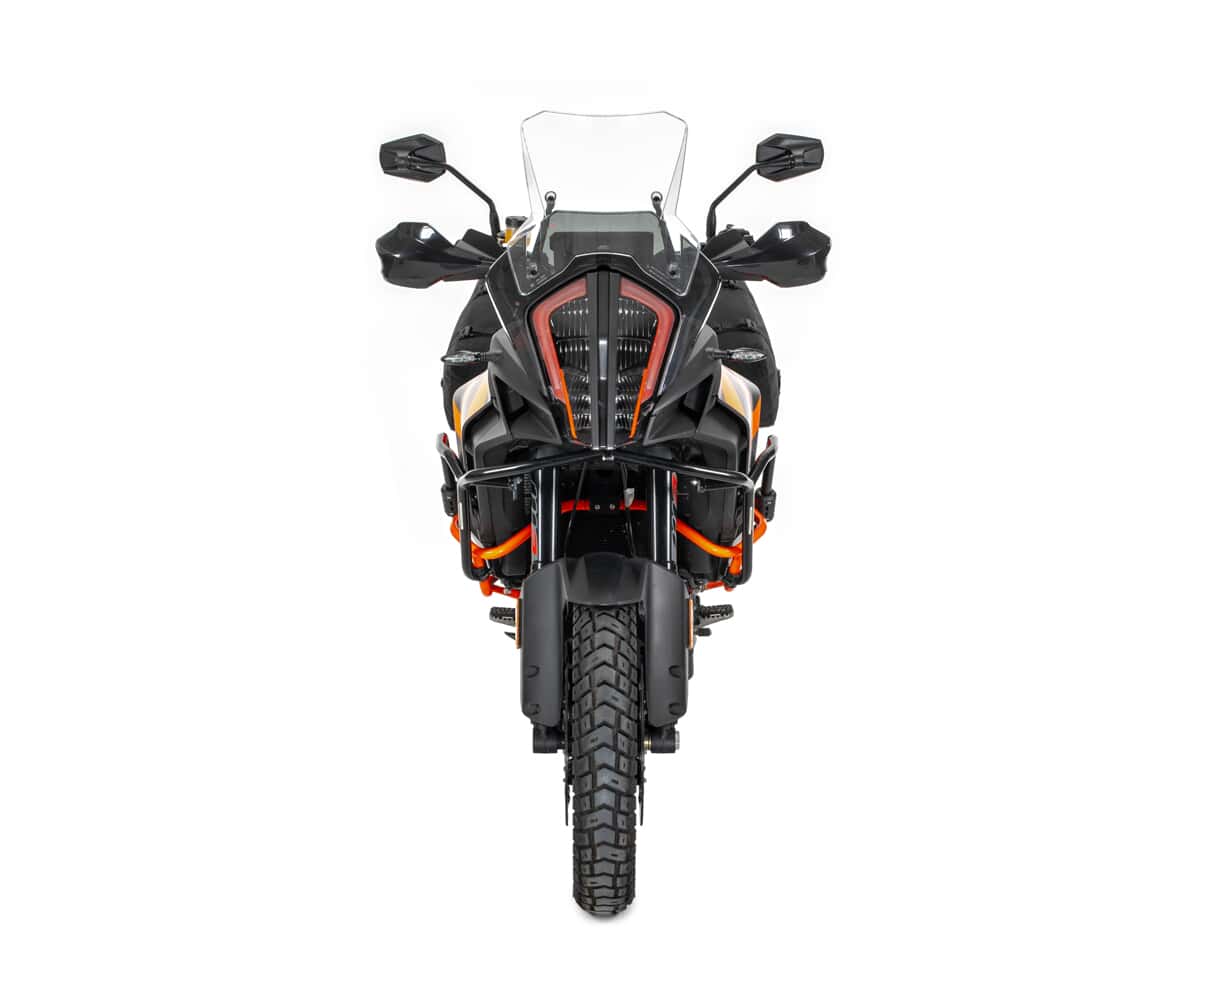 Kriega OS-Base Satteltaschenhalter für KTM 1050-1290 Adventure Neutral  kaufen - POLO Motorrad